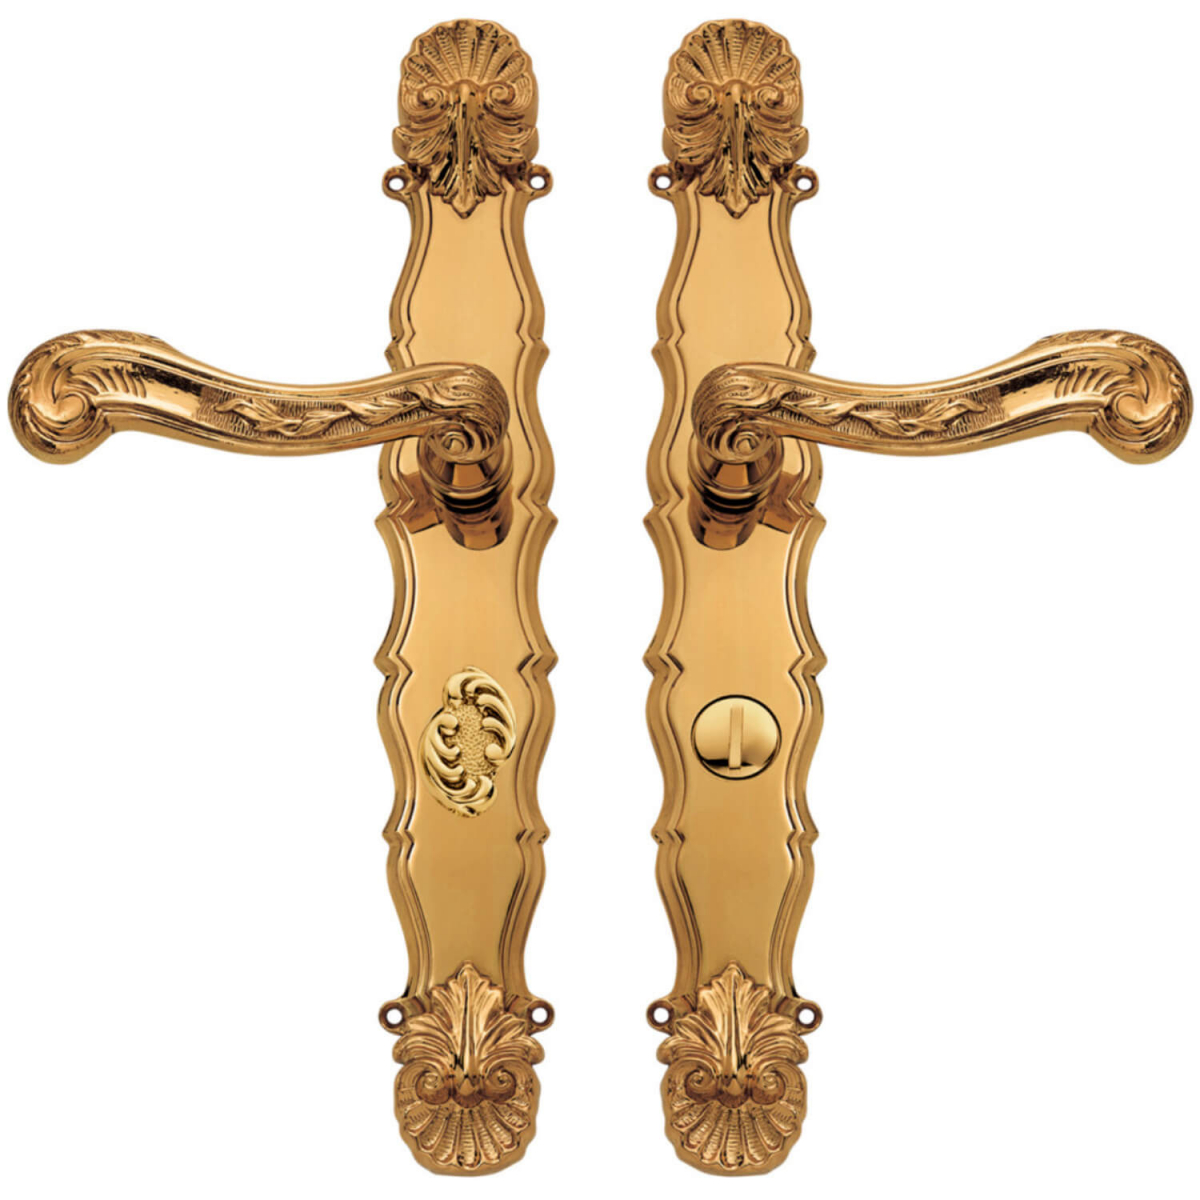 Door handle interior - Brass - Back plate - Privacy lock - Italian Baroque  - model C04312 - Italian door handles - VillaHus